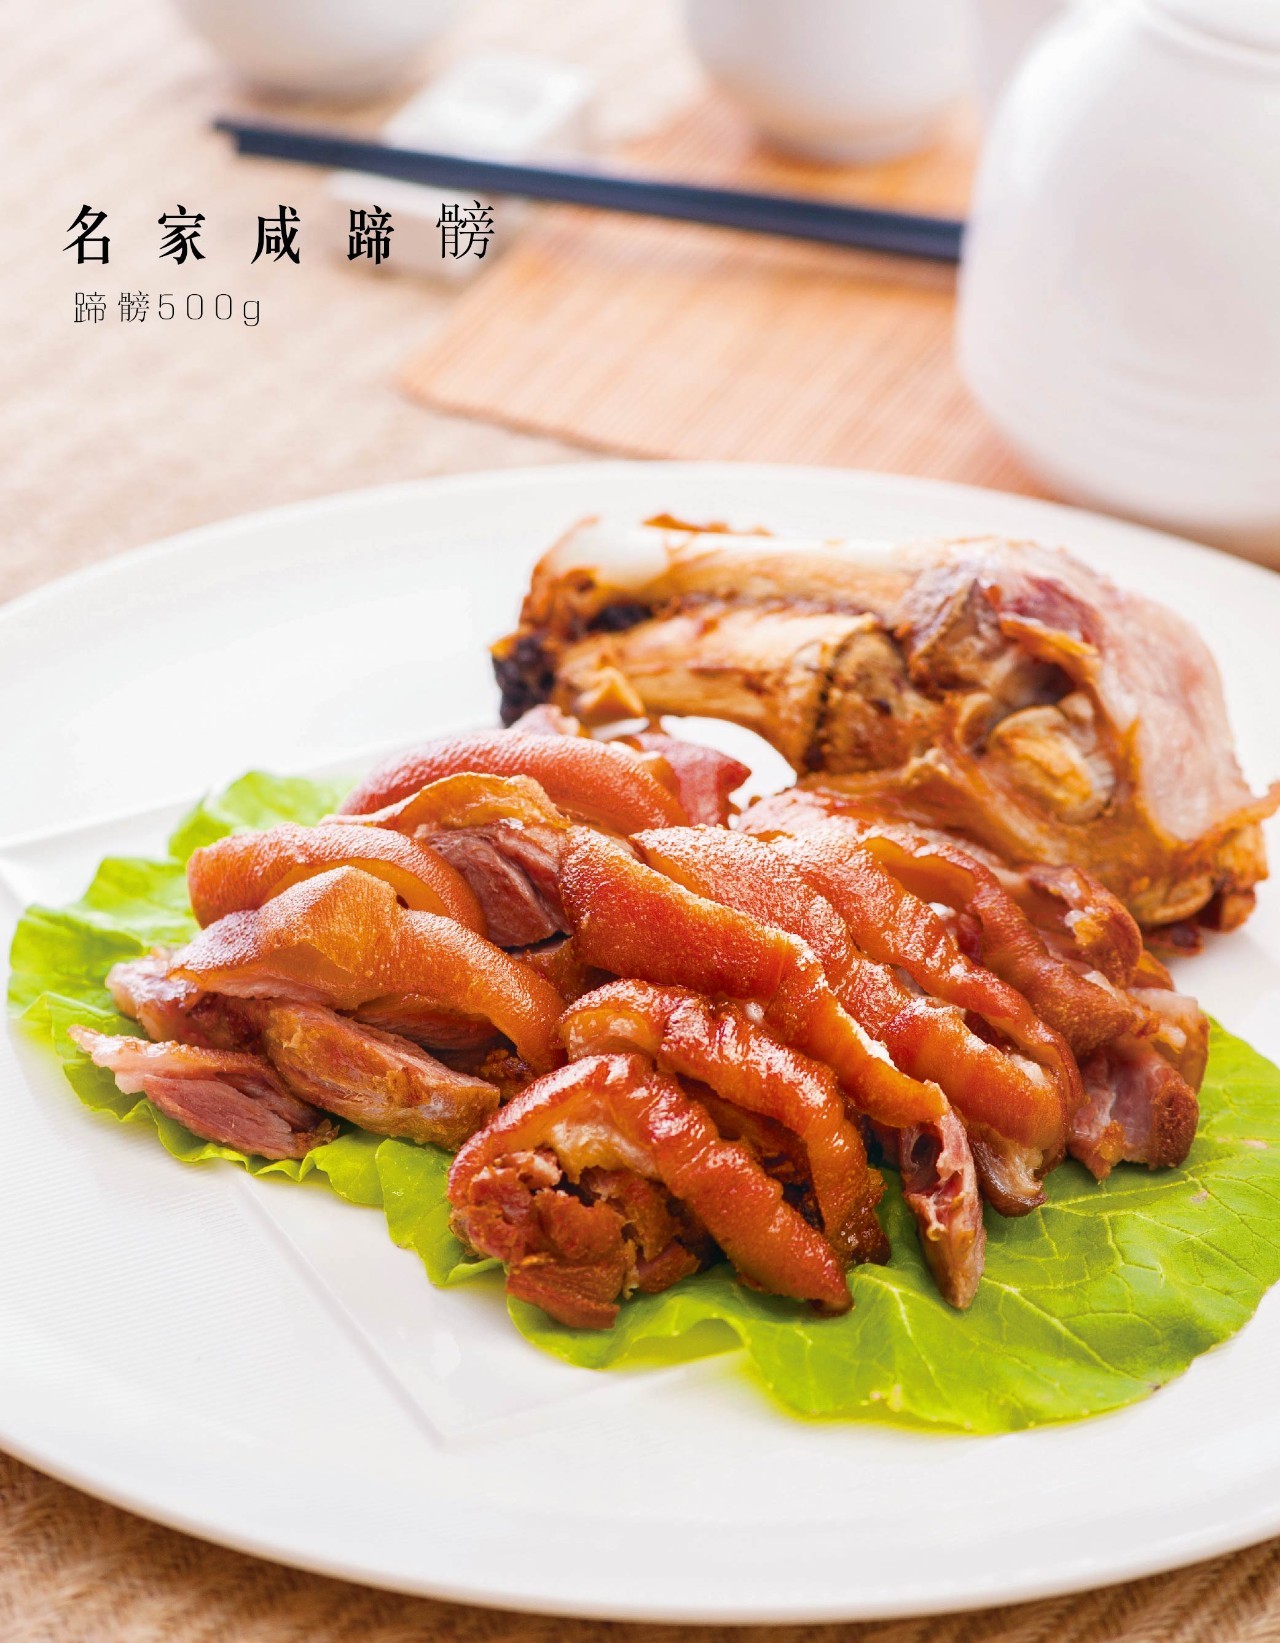 椒盐豆腐鱼29元/例豆腐鱼,乘热吃鱼肉鲜嫩,外皮脆香,沾上椒盐,绝了